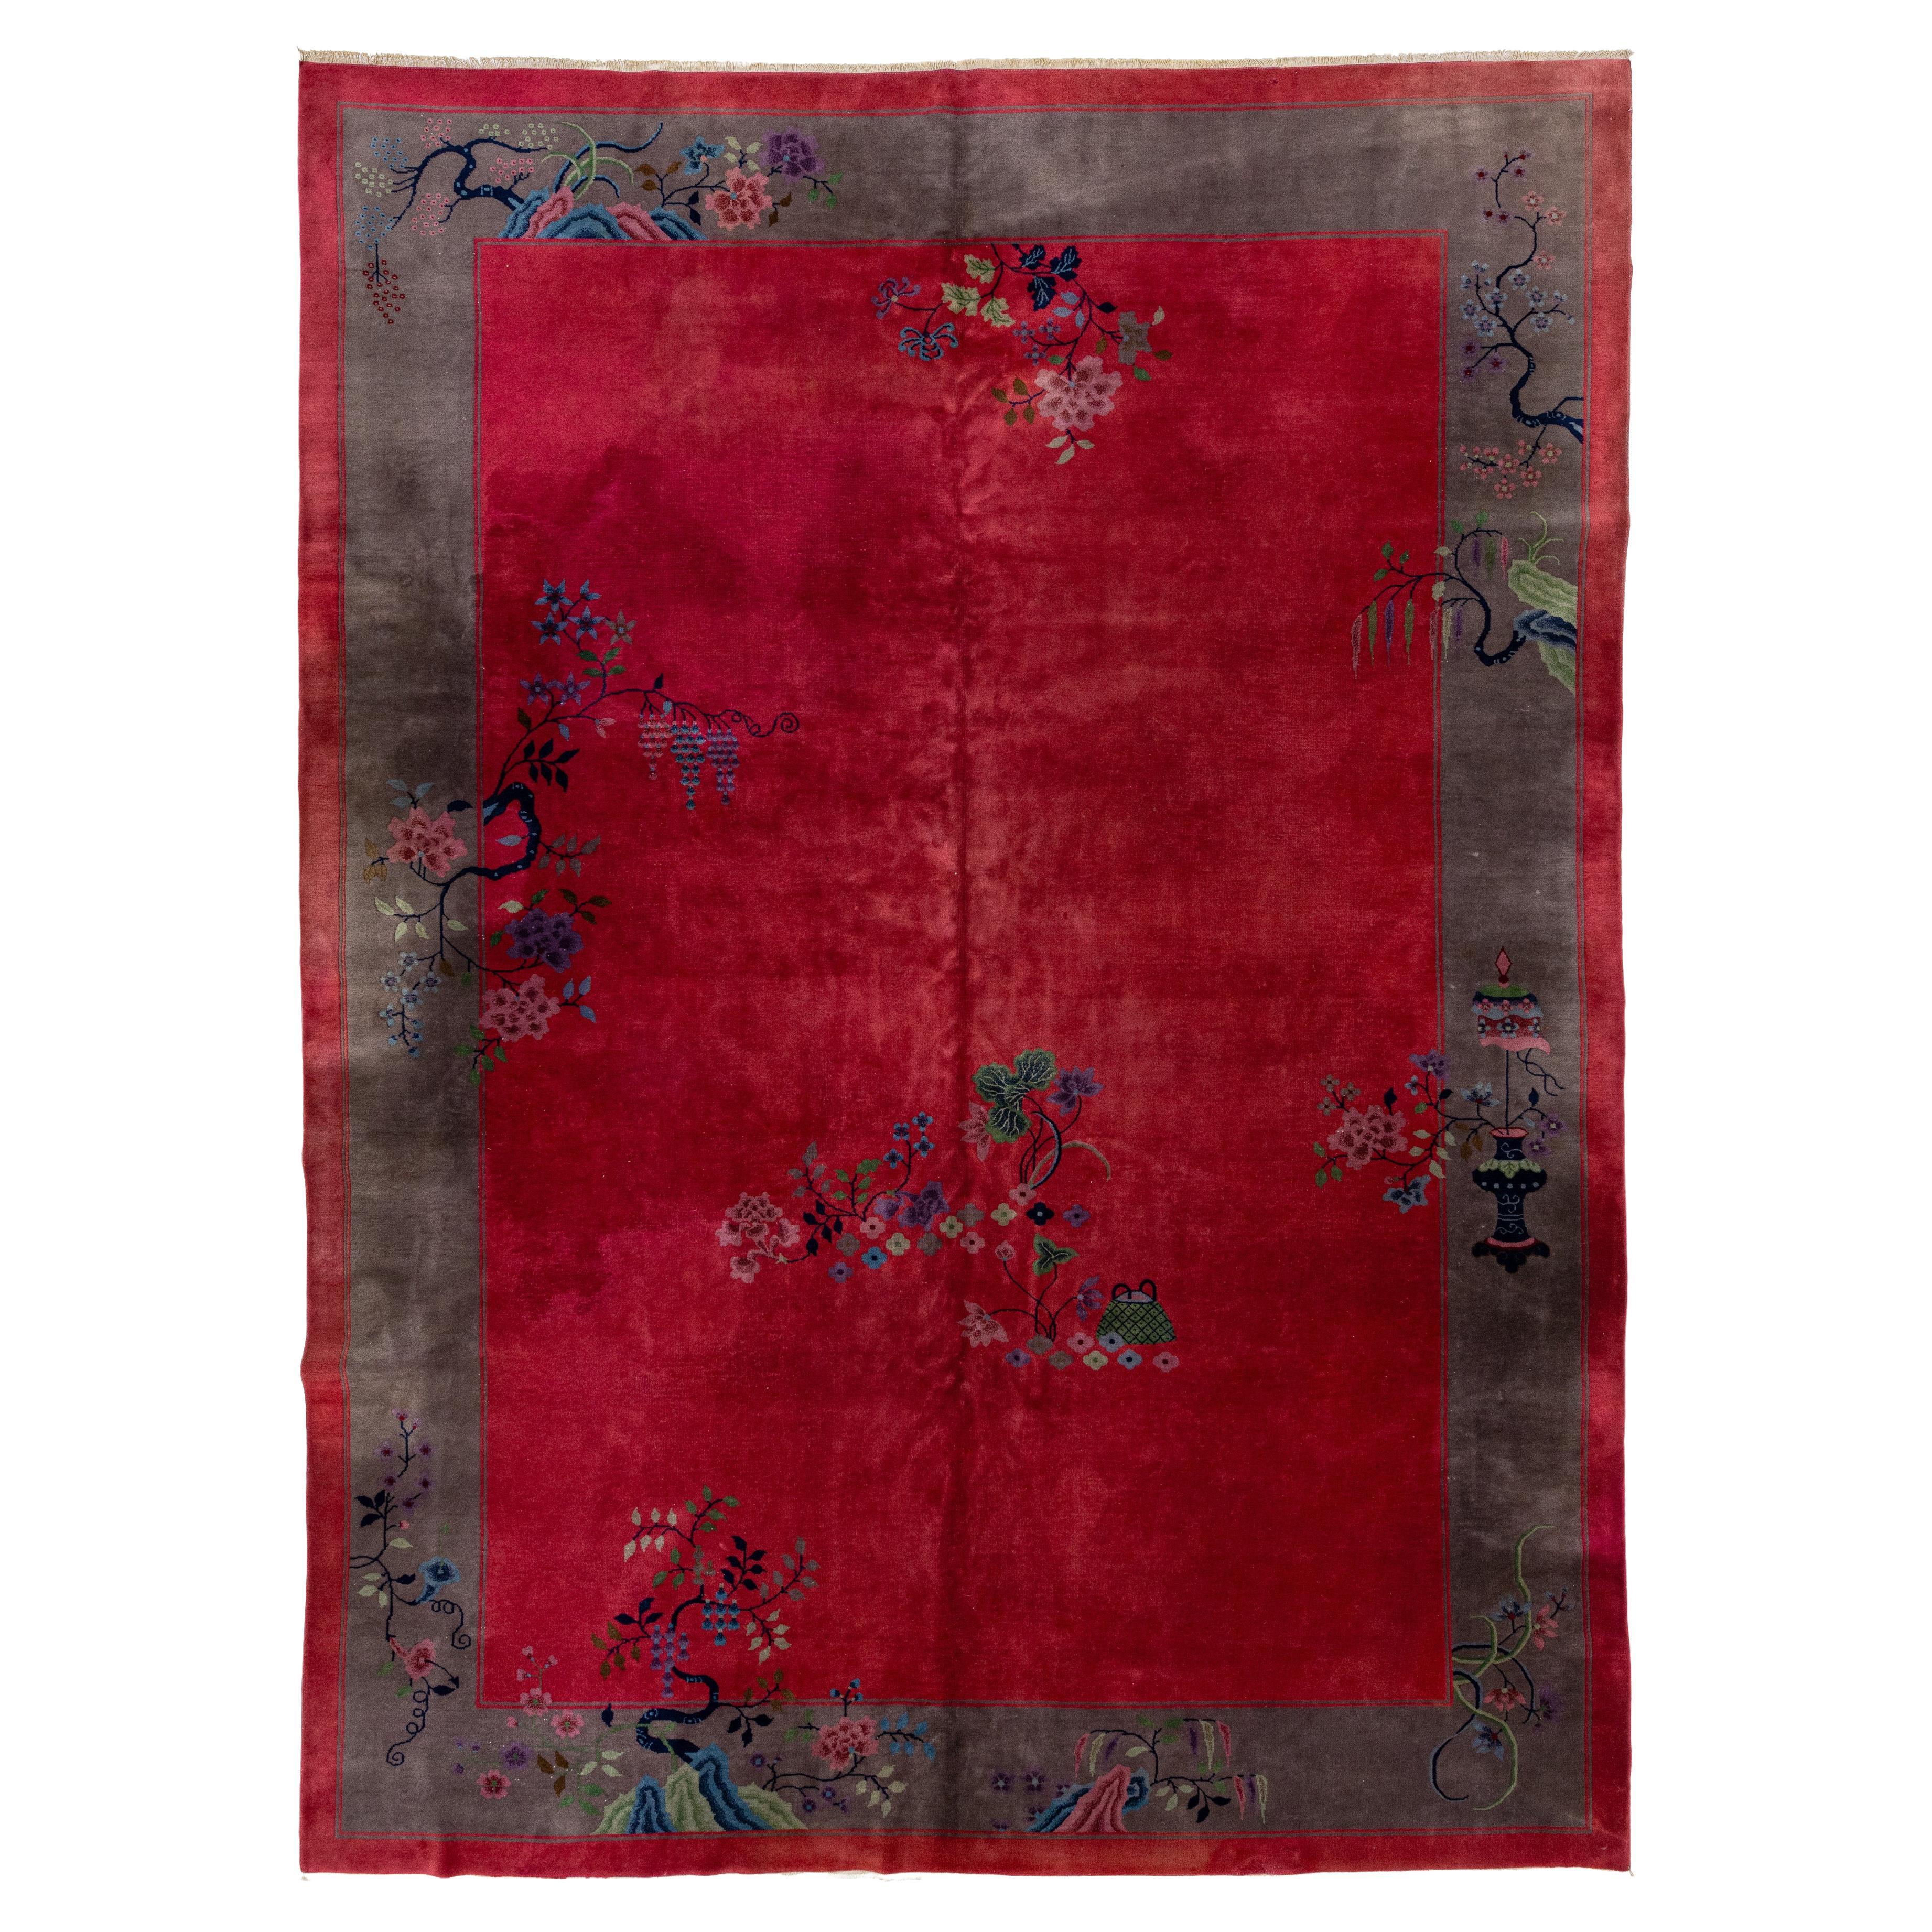 Roter Art-Deco-Teppich aus chinesischer Wolle mit Blumenmotiv aus den 1920er Jahren